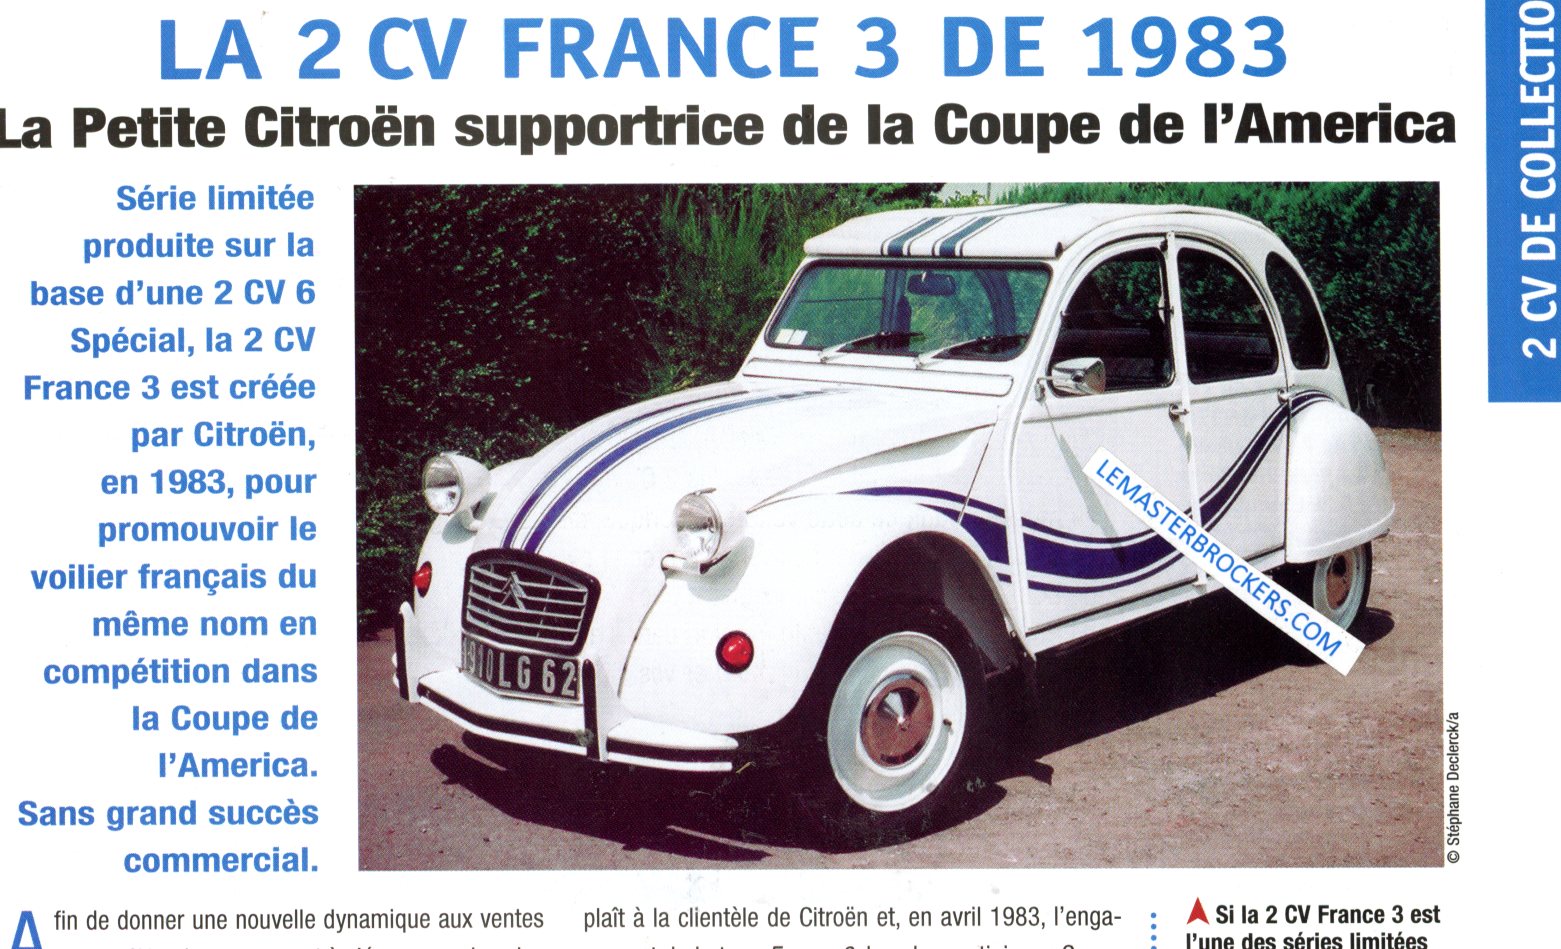 CITROËN 2 CV FRANCE 3 DE 1983